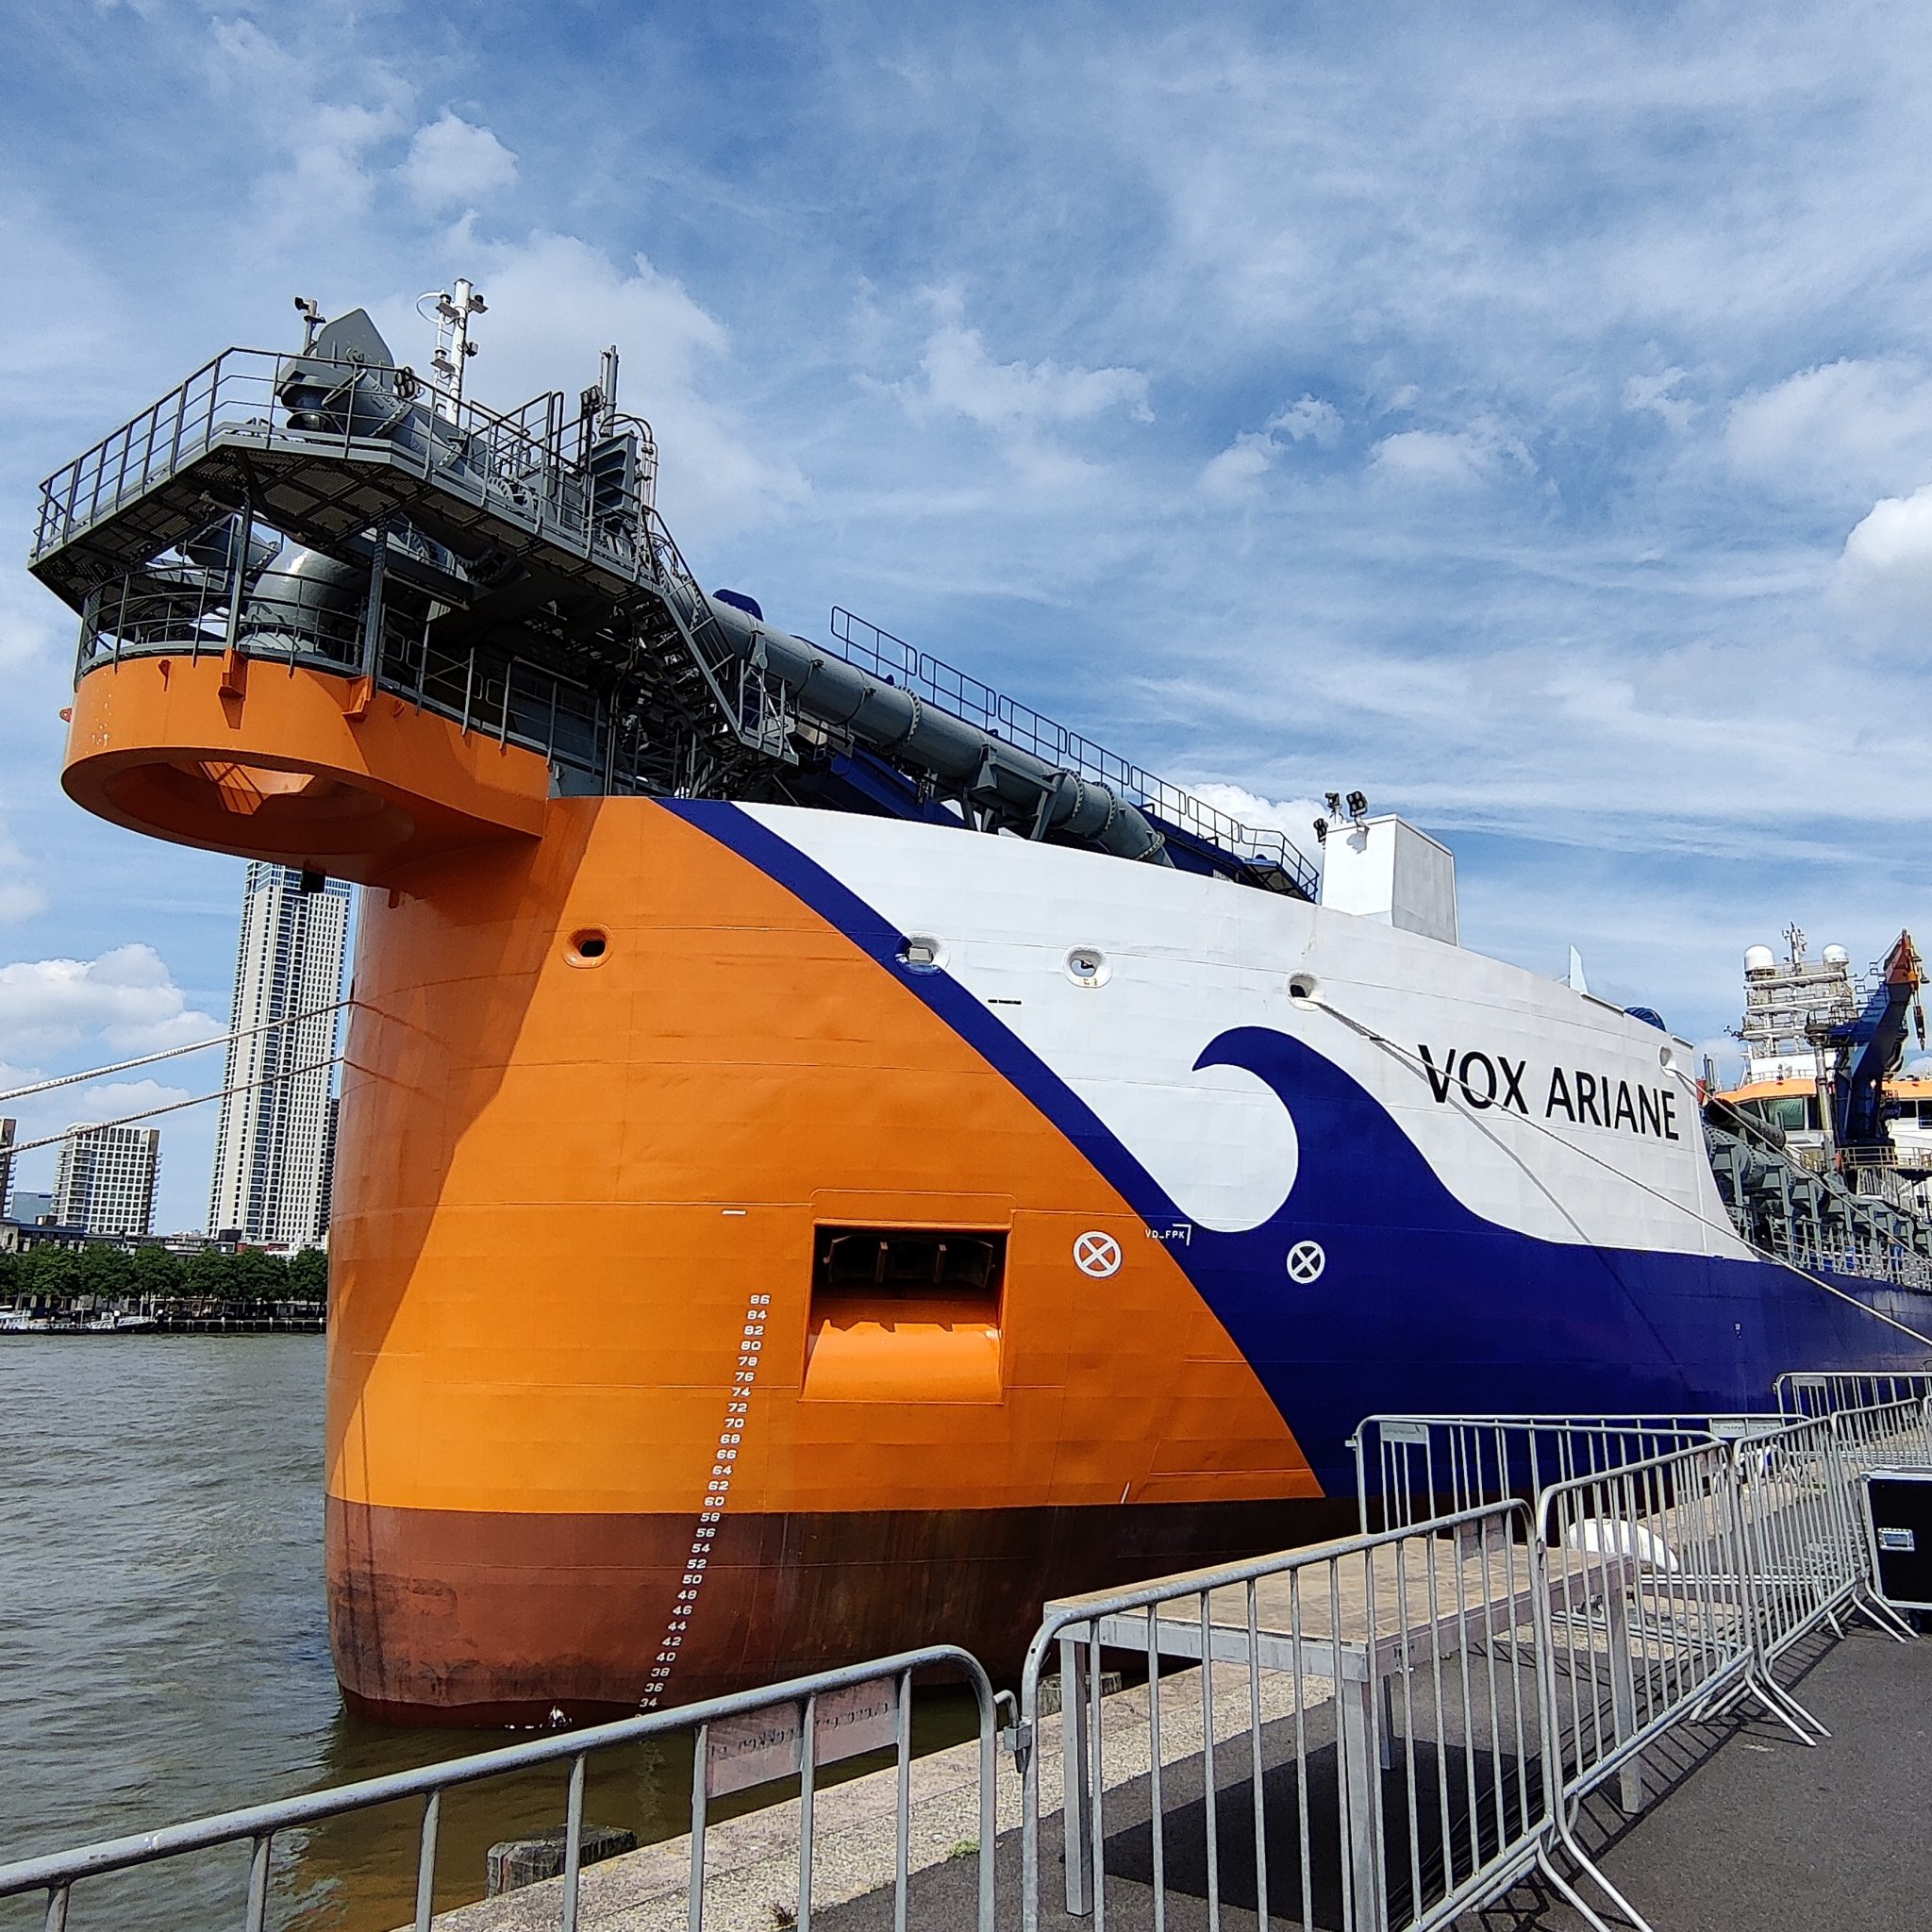 De Vox Ariane in de kleuren van Van Oord: oranje, wit en marineblauw. (Foto's Robin van den Bovenkamp / Emma Dailey)